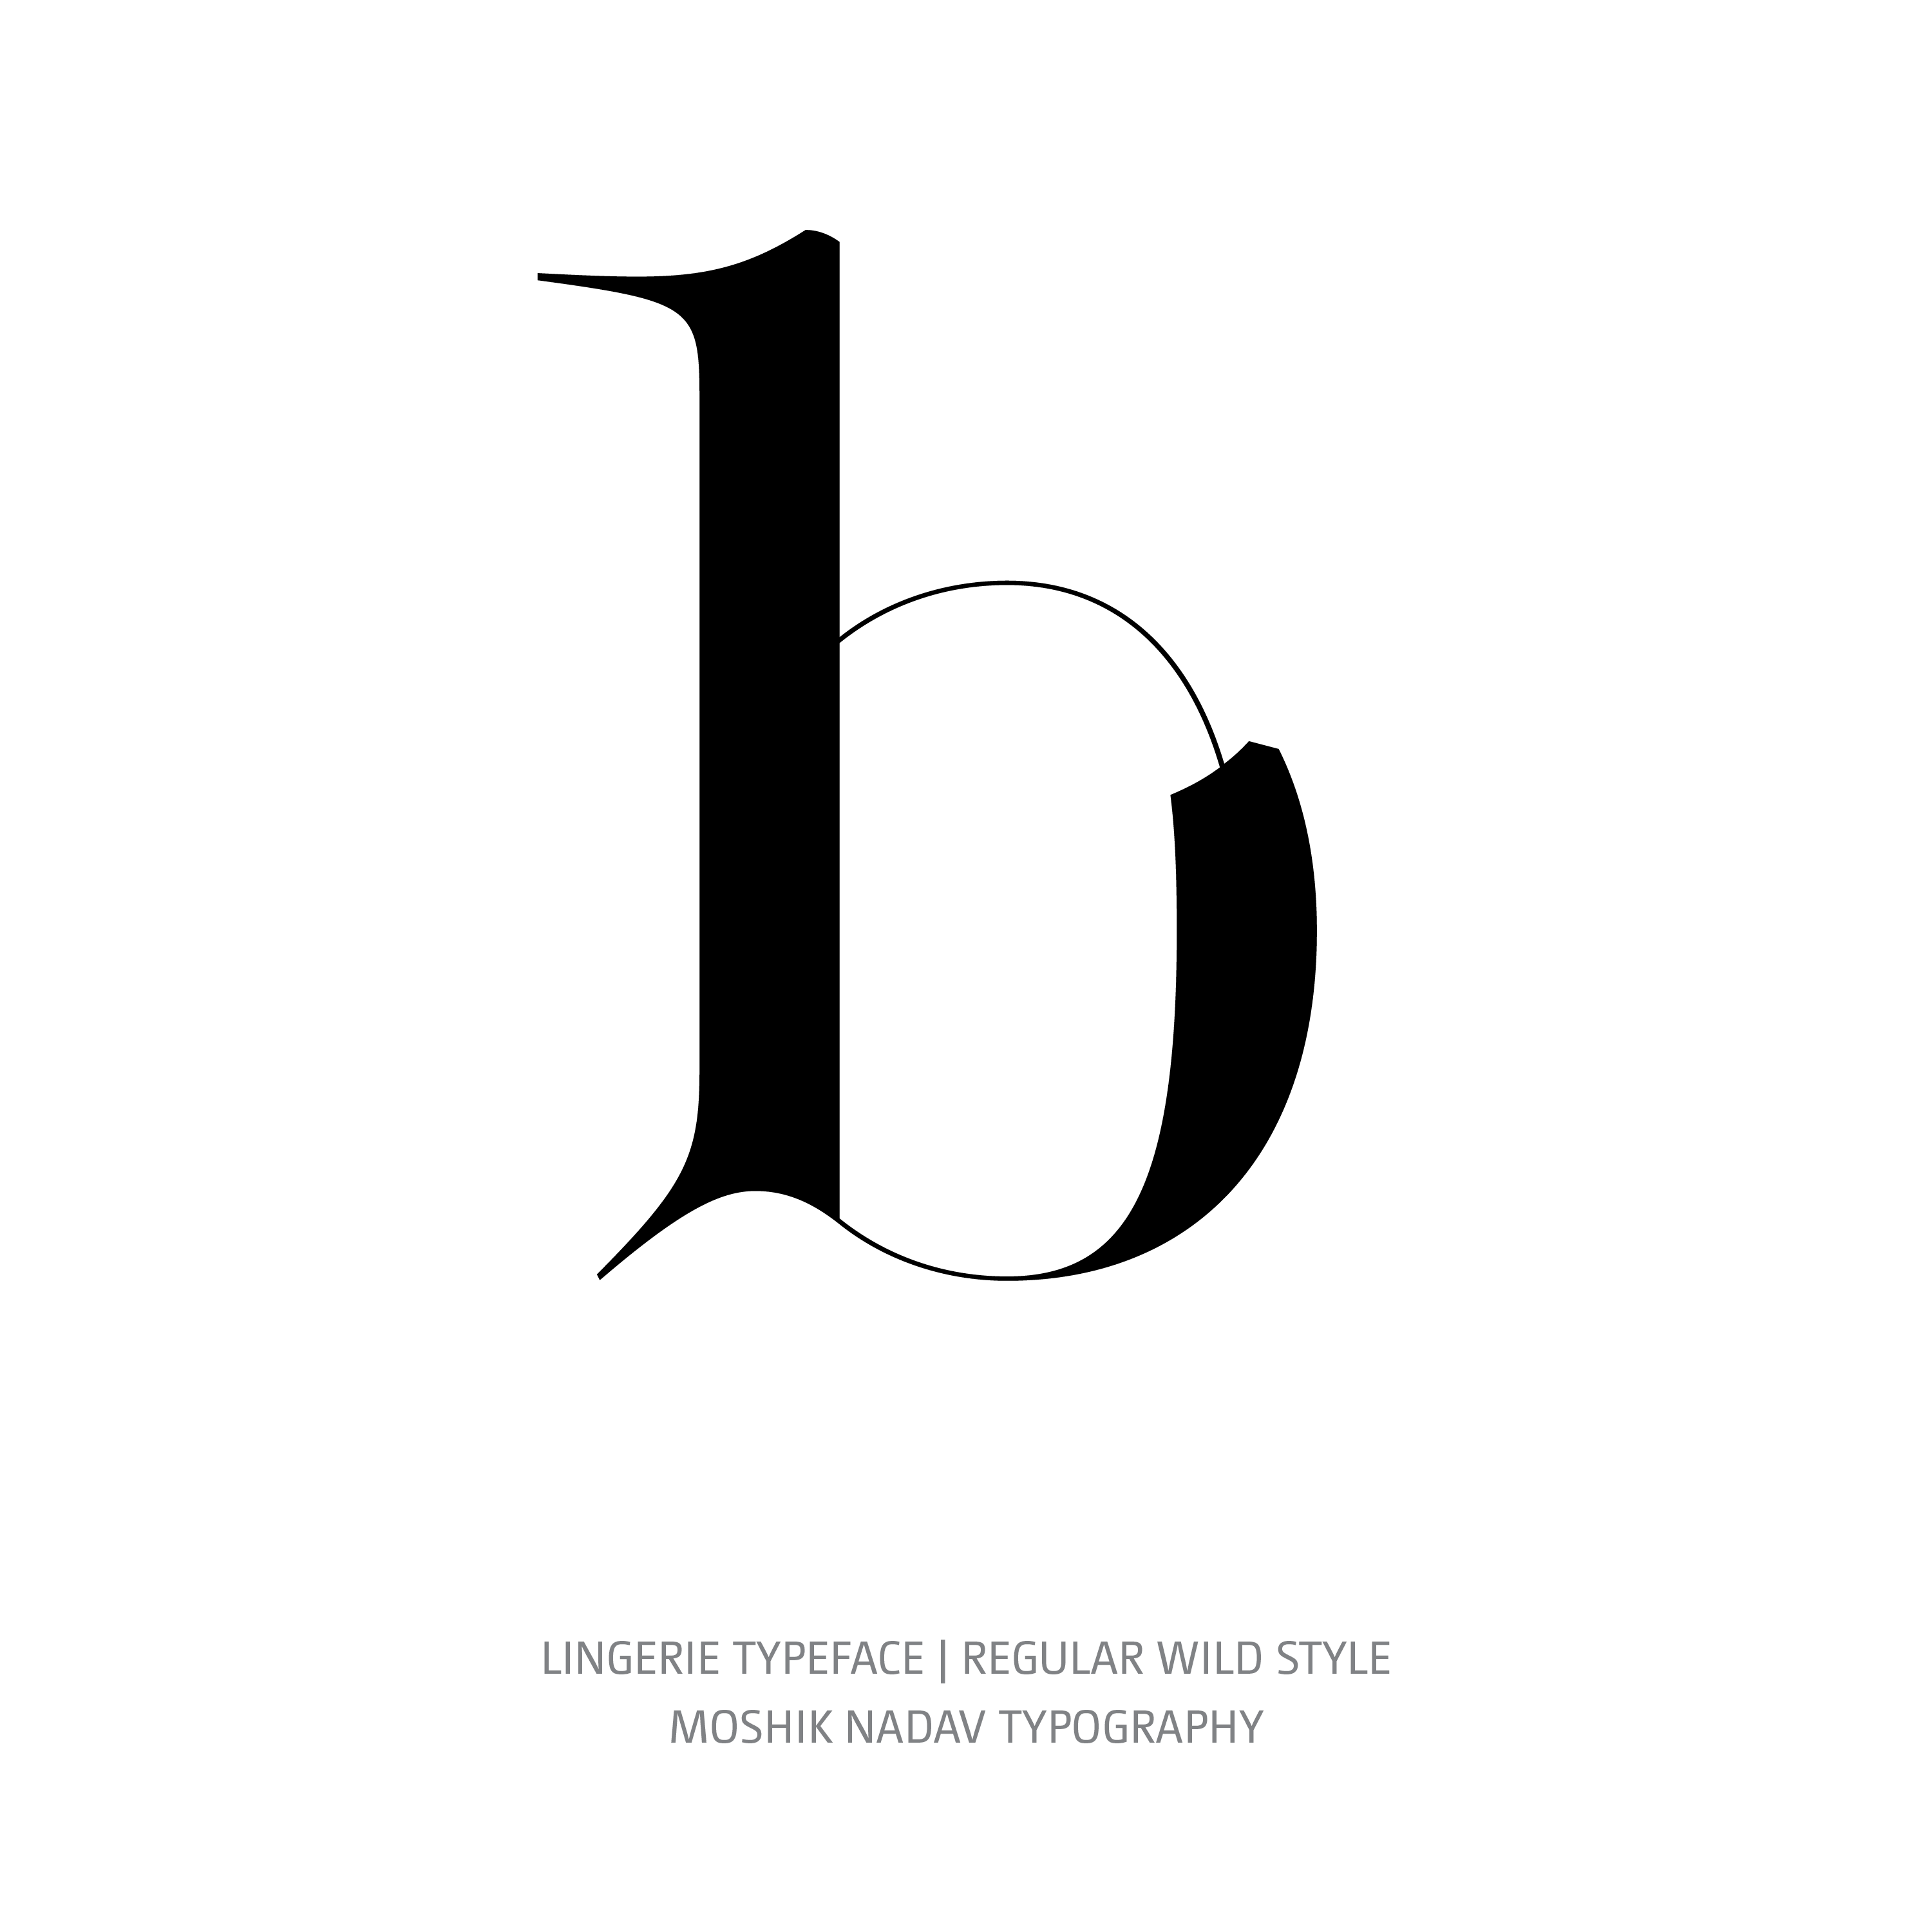 Lingerie Typeface Regular Wild b